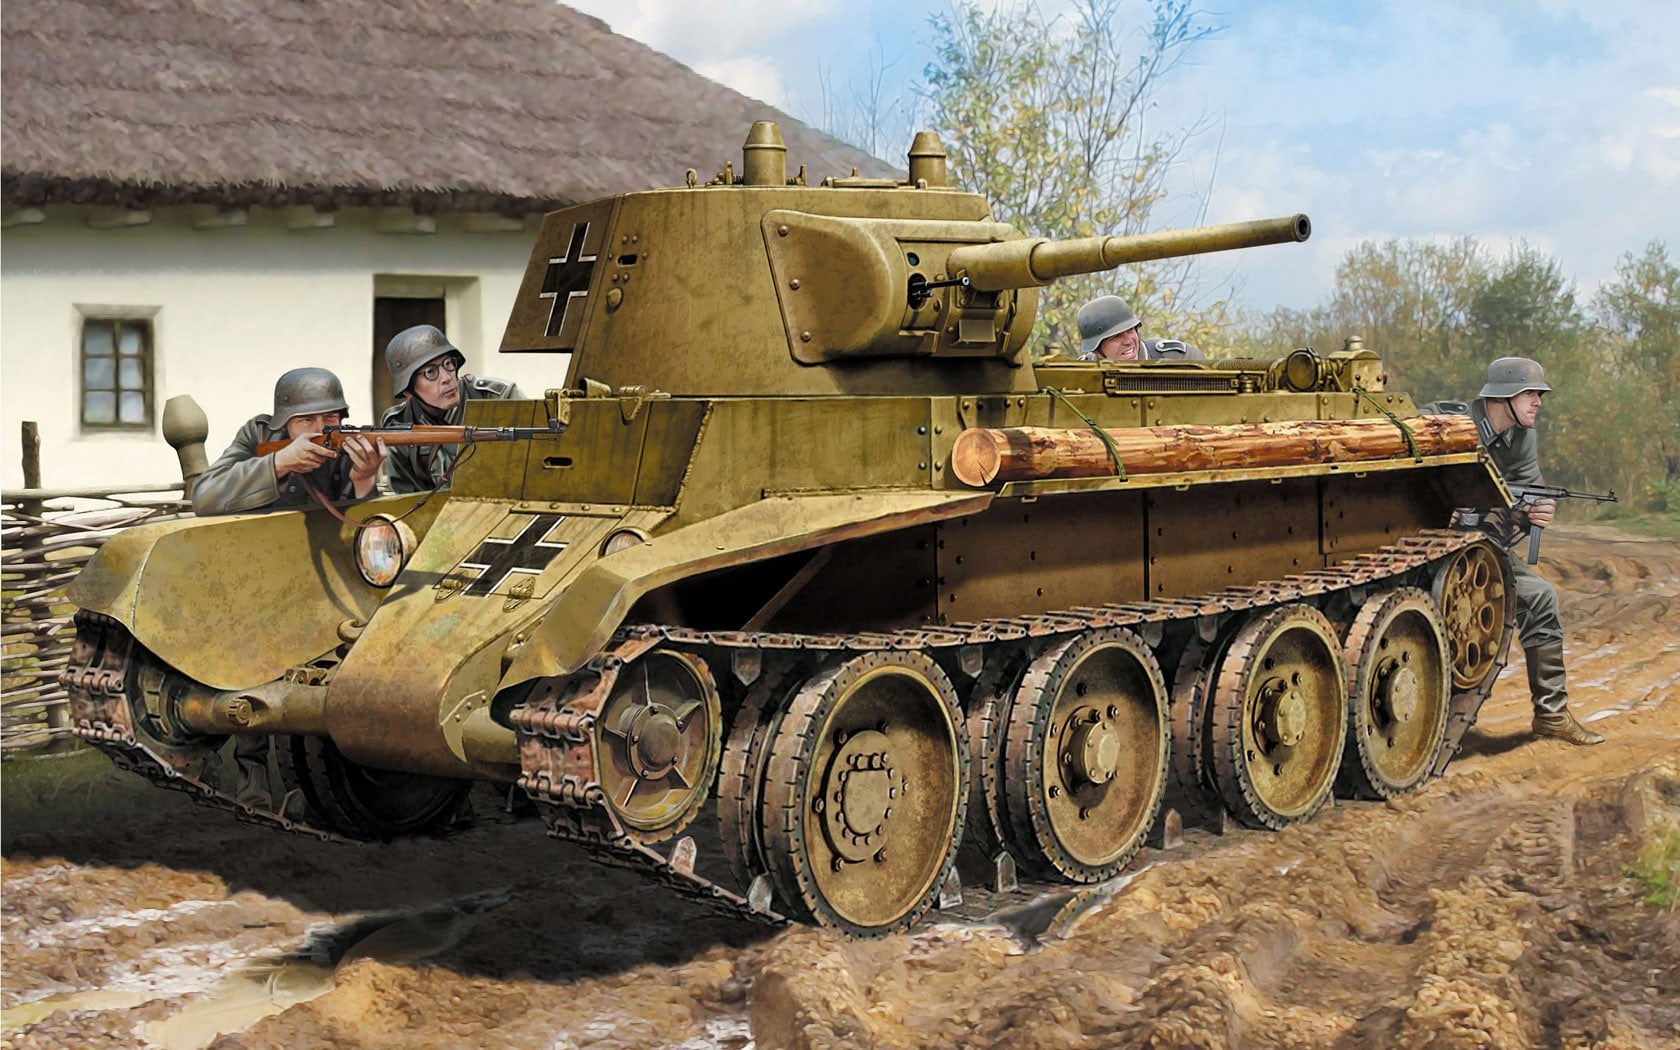 Гитлеровцы при штурме форта использовали трофейные советские танки